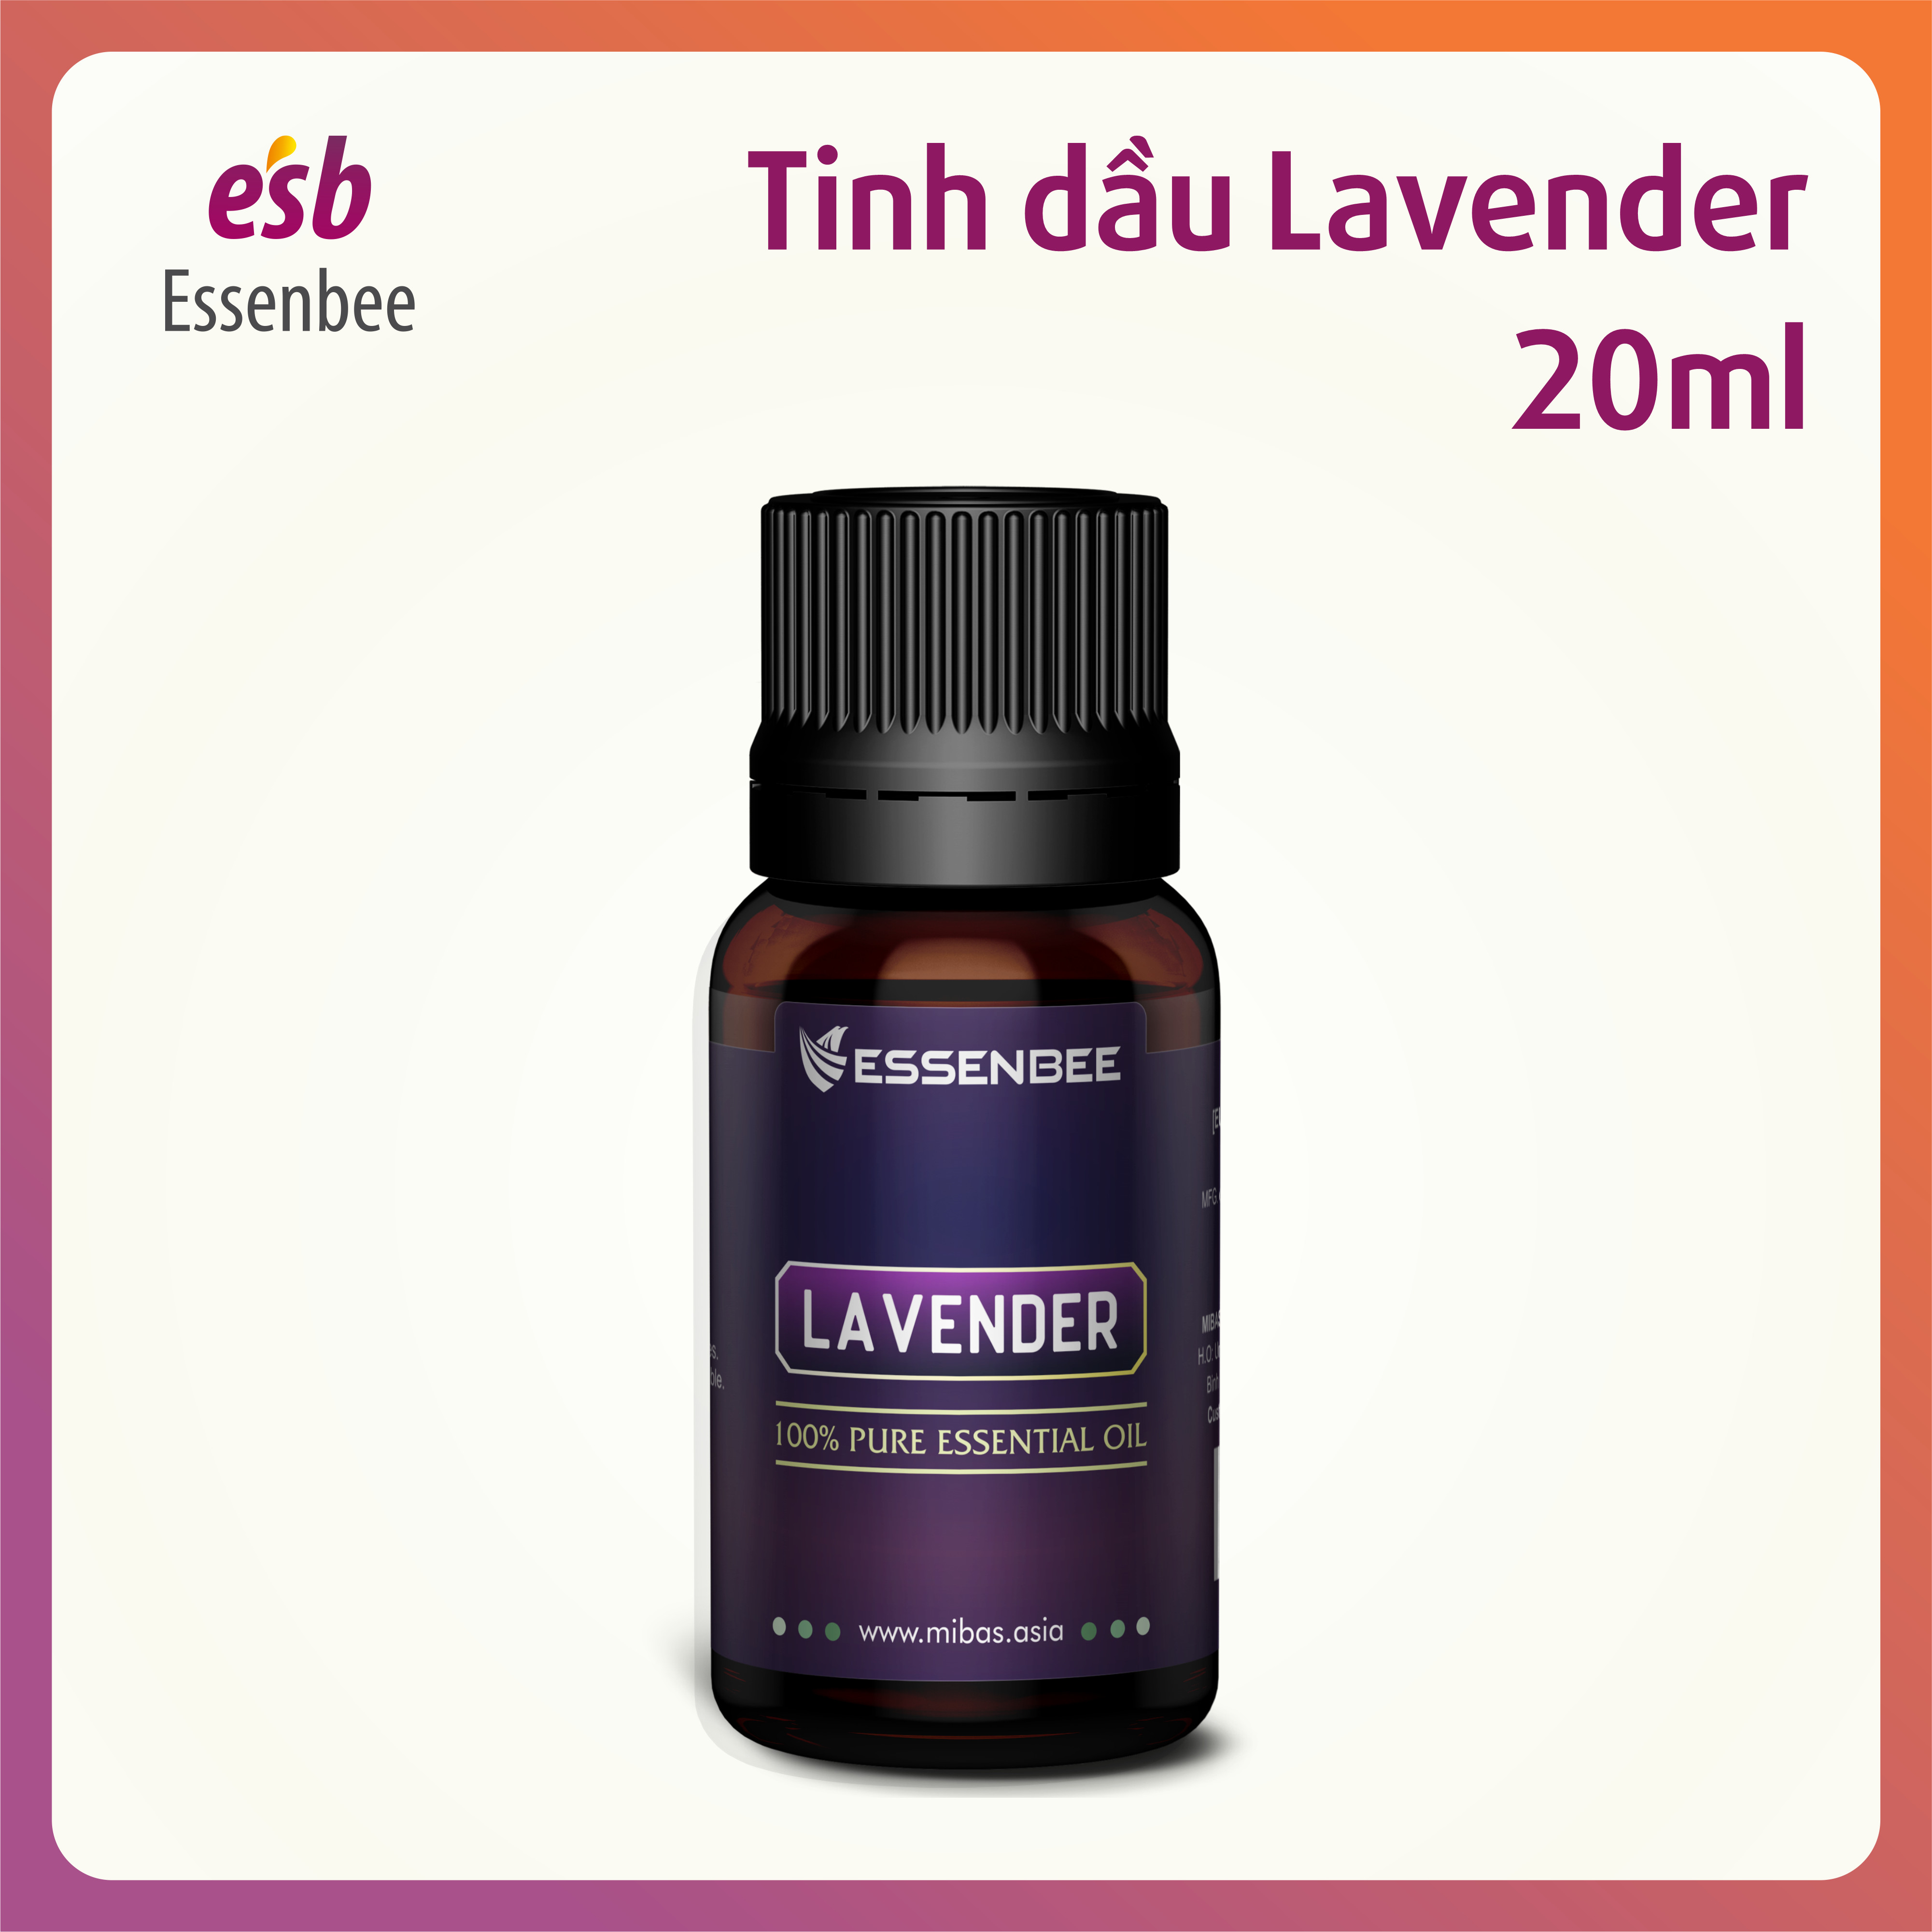 Tinh dầu thiên nhiên Hoa Lavender - Essenbee - 20ml - Hỗ trợ thư giãn tinh thần, giảm stress, chống trầm cảm. Kháng khuẩn, khử mùi, tái tạo không khí trong lành. Xua muỗi hiệu quả và an toàn cho trẻ em. 